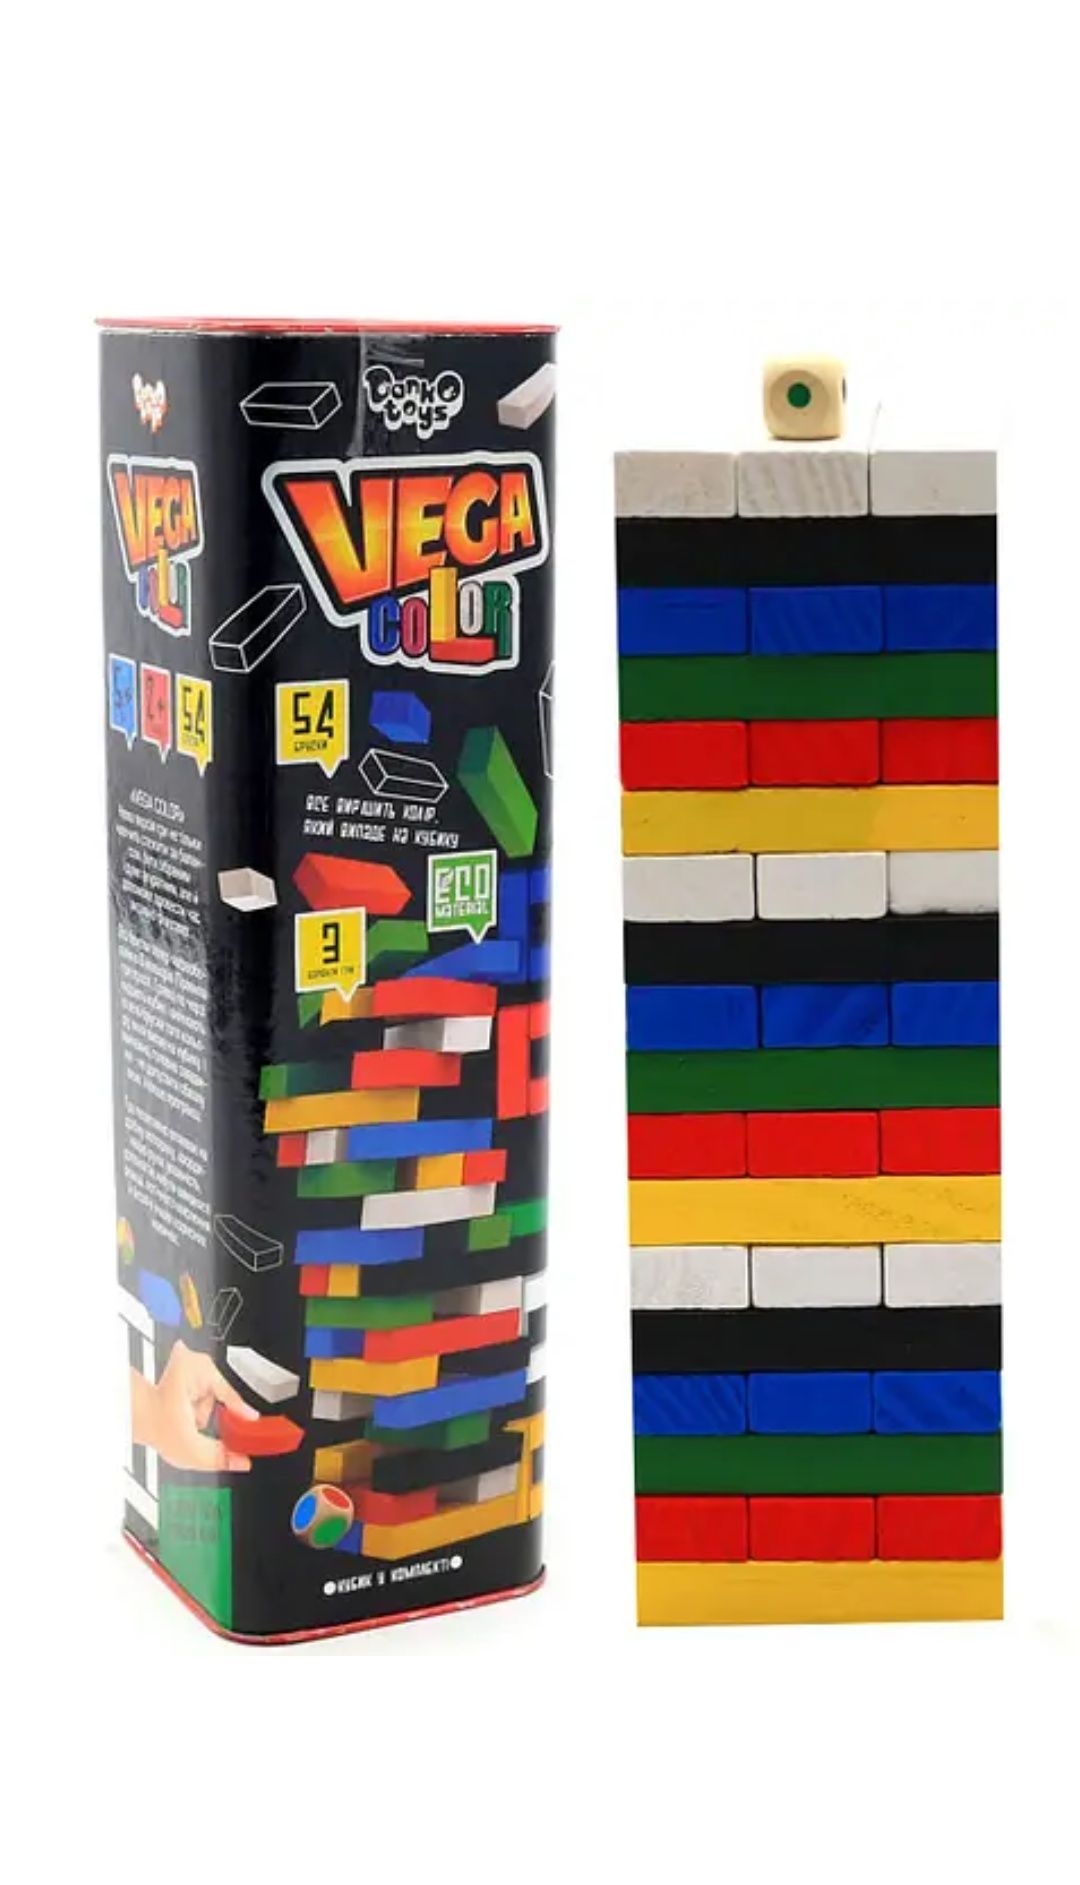 Настільна гра башта Vega (Vega) за кольорами. Версія гри Дженга